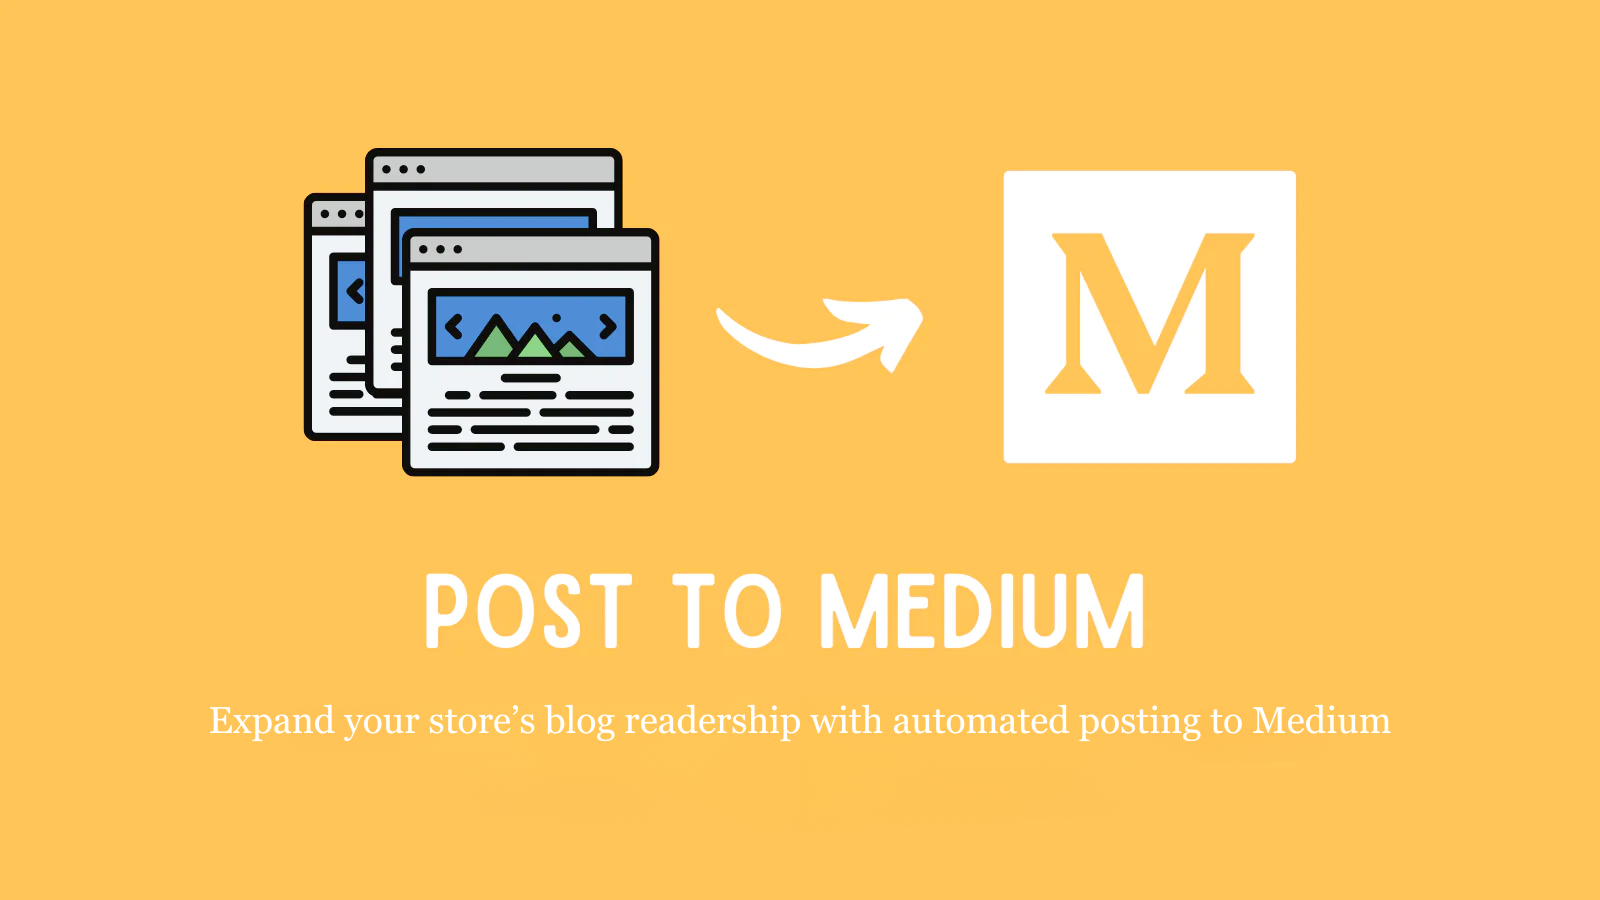 Eine einfache Möglichkeit, Ihre Blog-Leserschaft mit Medium-Posts zu erweitern